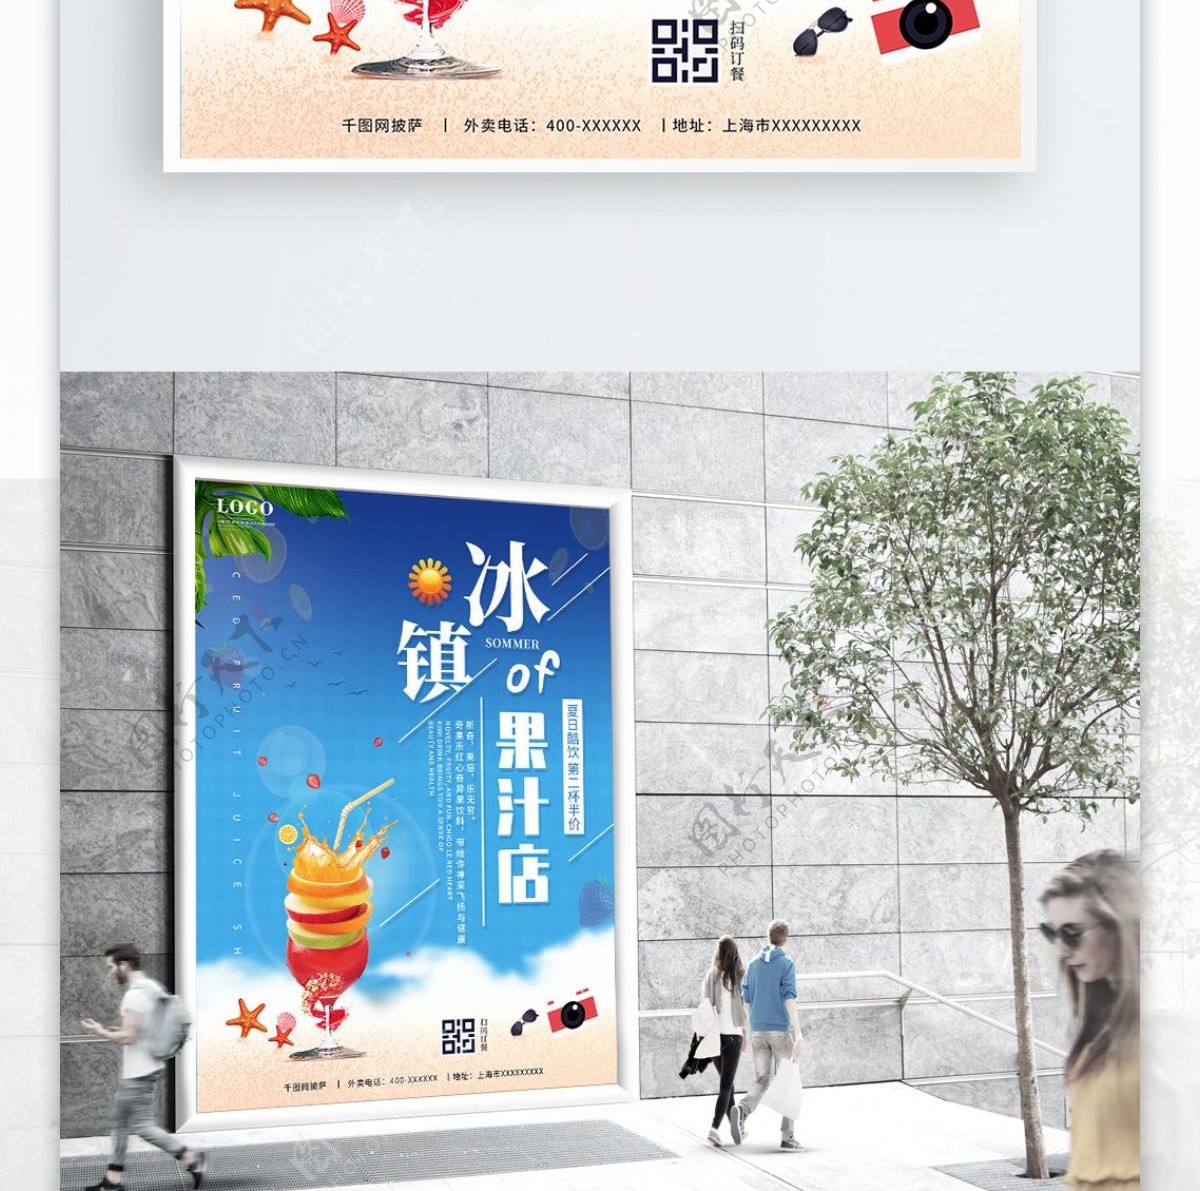 夏日冰镇果汁奶茶咖啡店宣传单促销海报